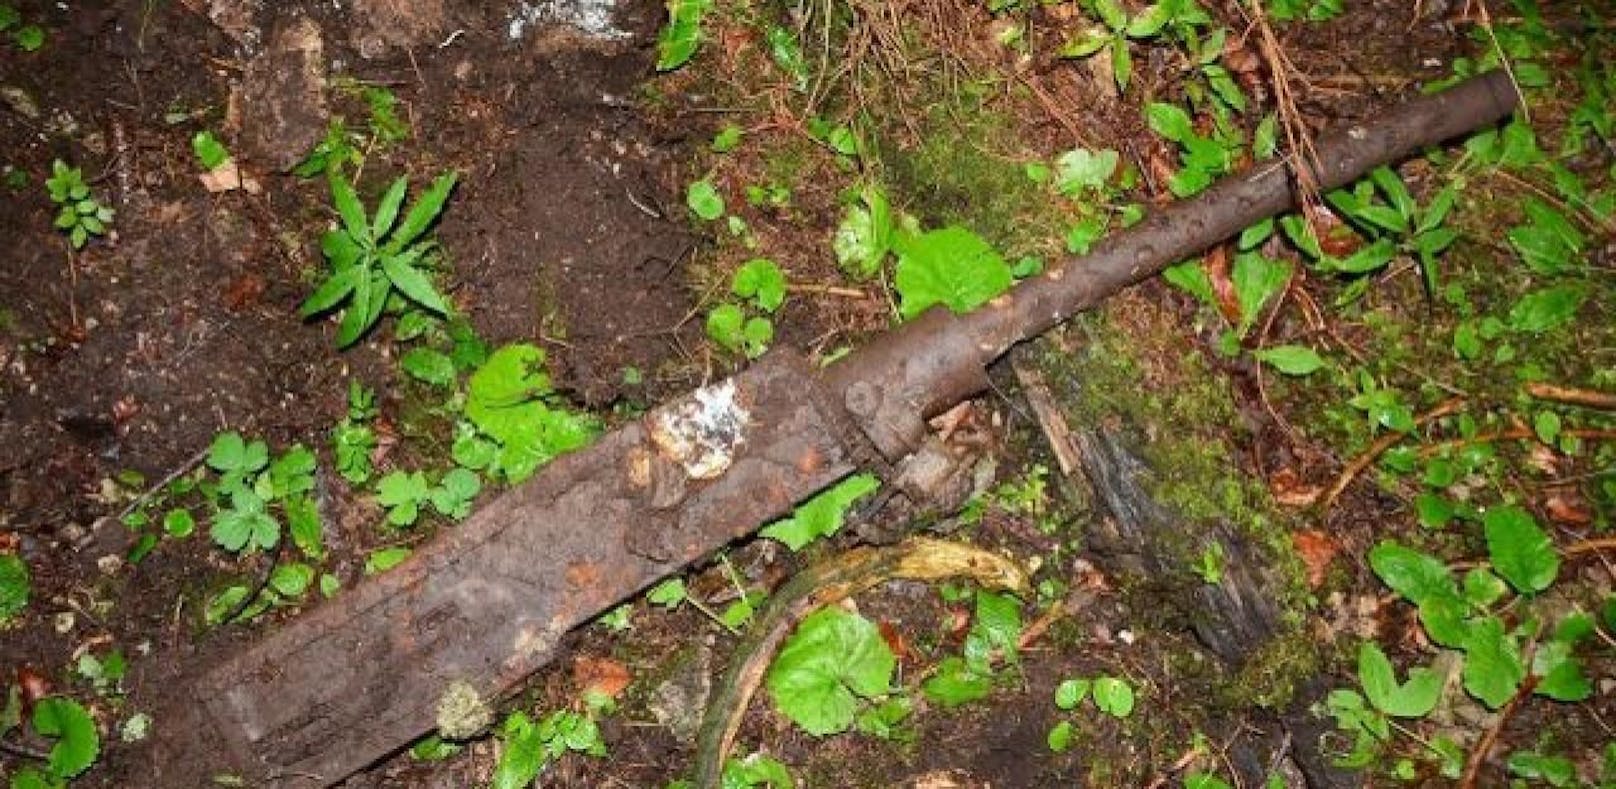 Kanone aus dem Weltkrieg beim Wandern gefunden